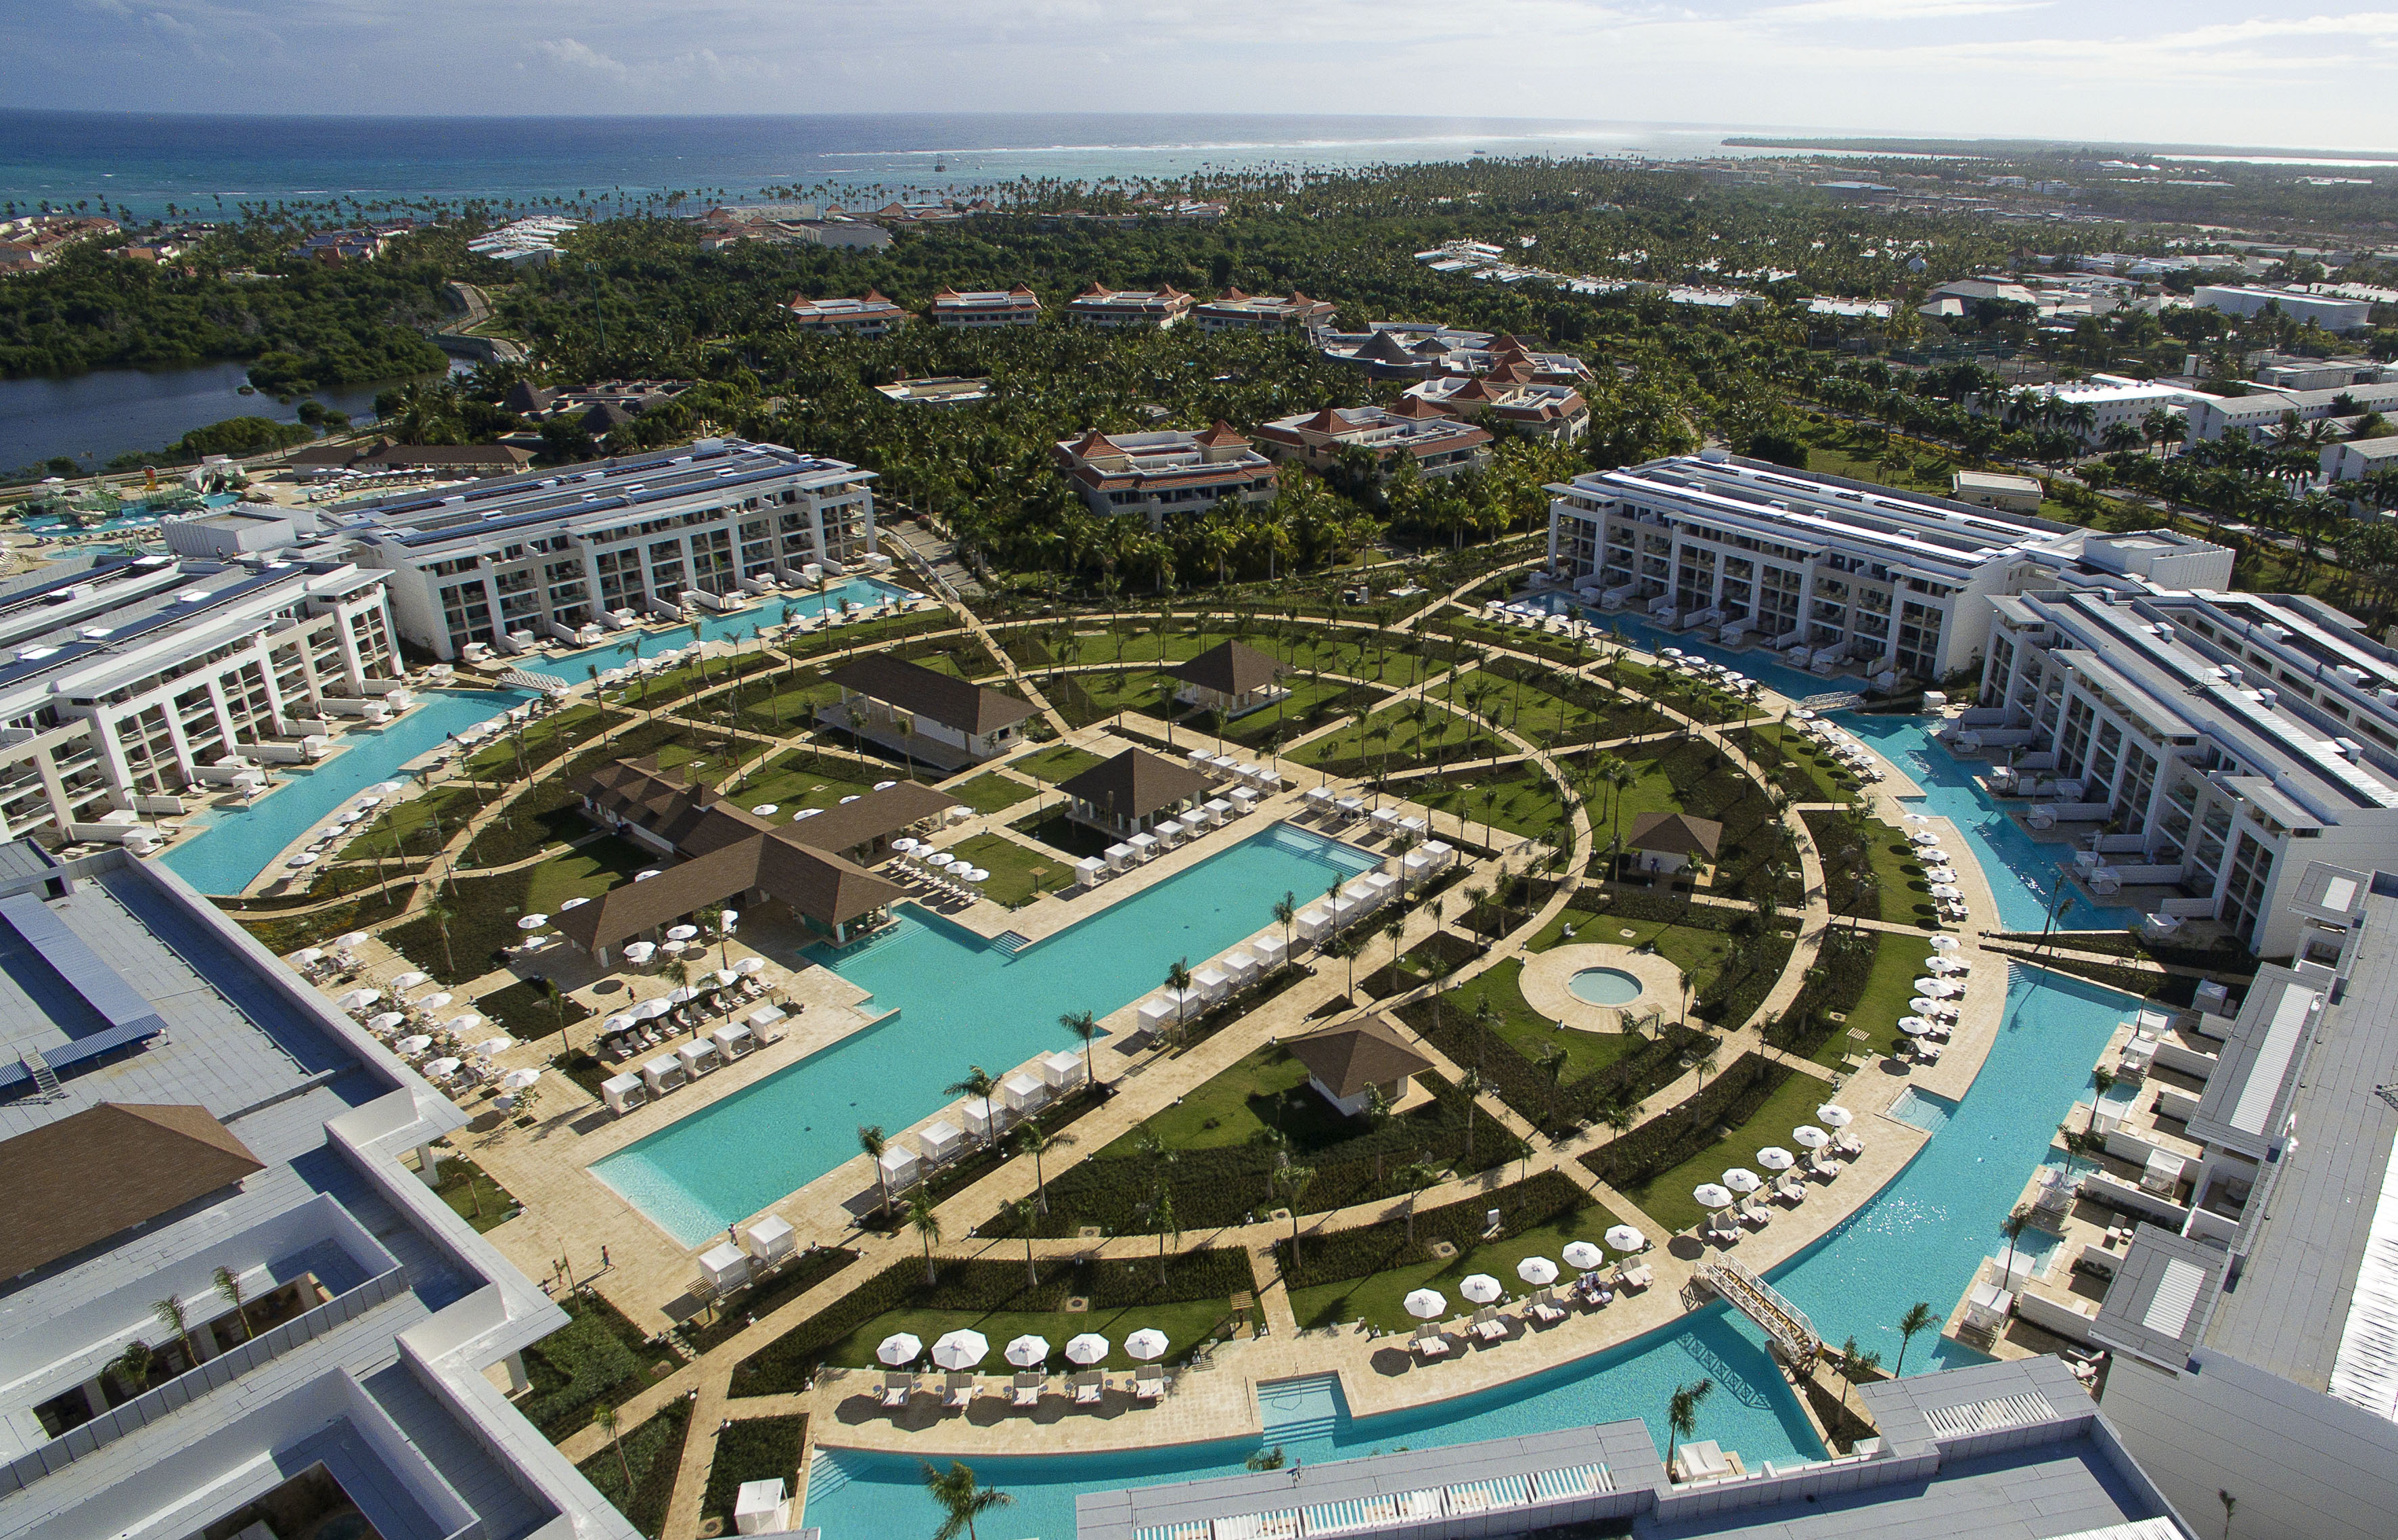 Cadena hotelera Meliá cambia de marca y renueva dos de sus hoteles en Punta Cana